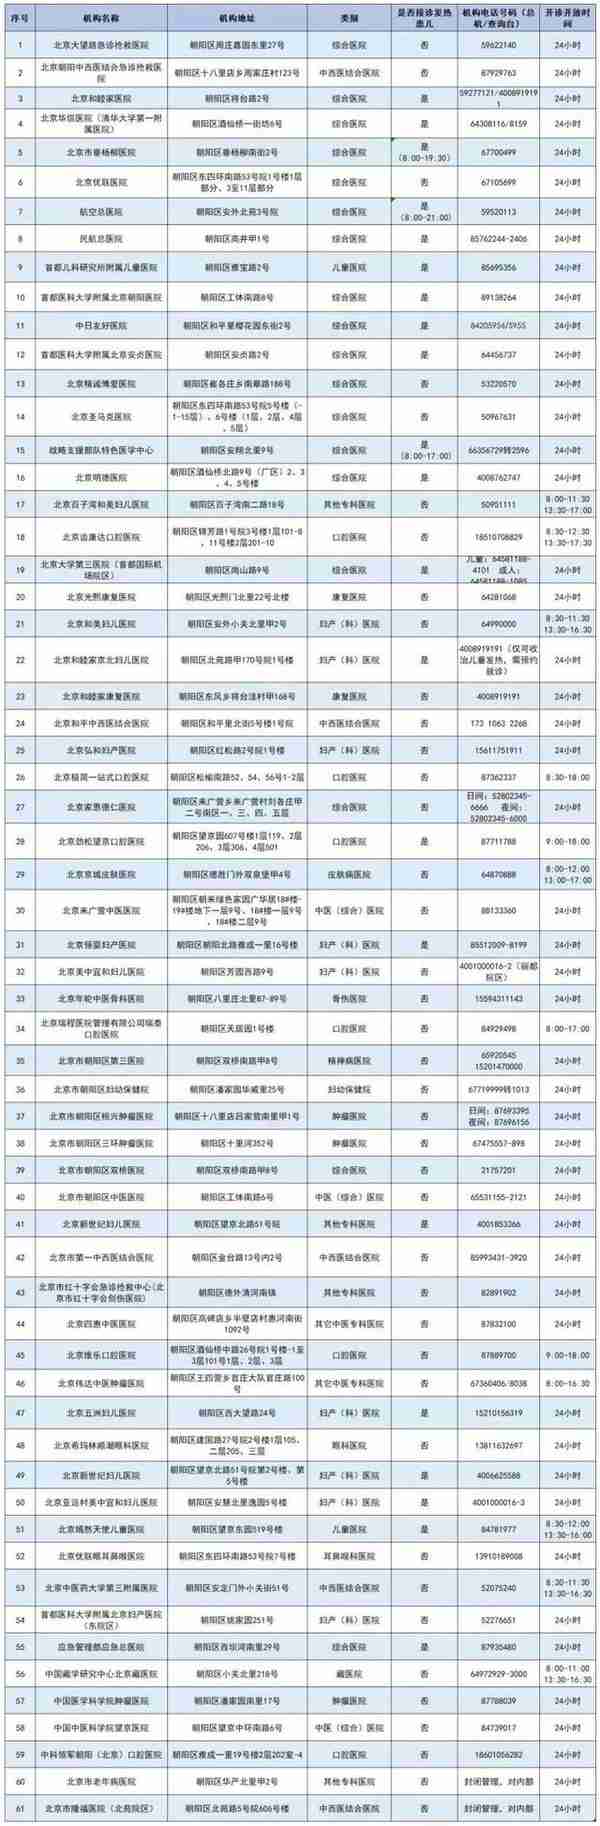 北京朝阳区公布最新发热门诊（诊室）医疗机构名单